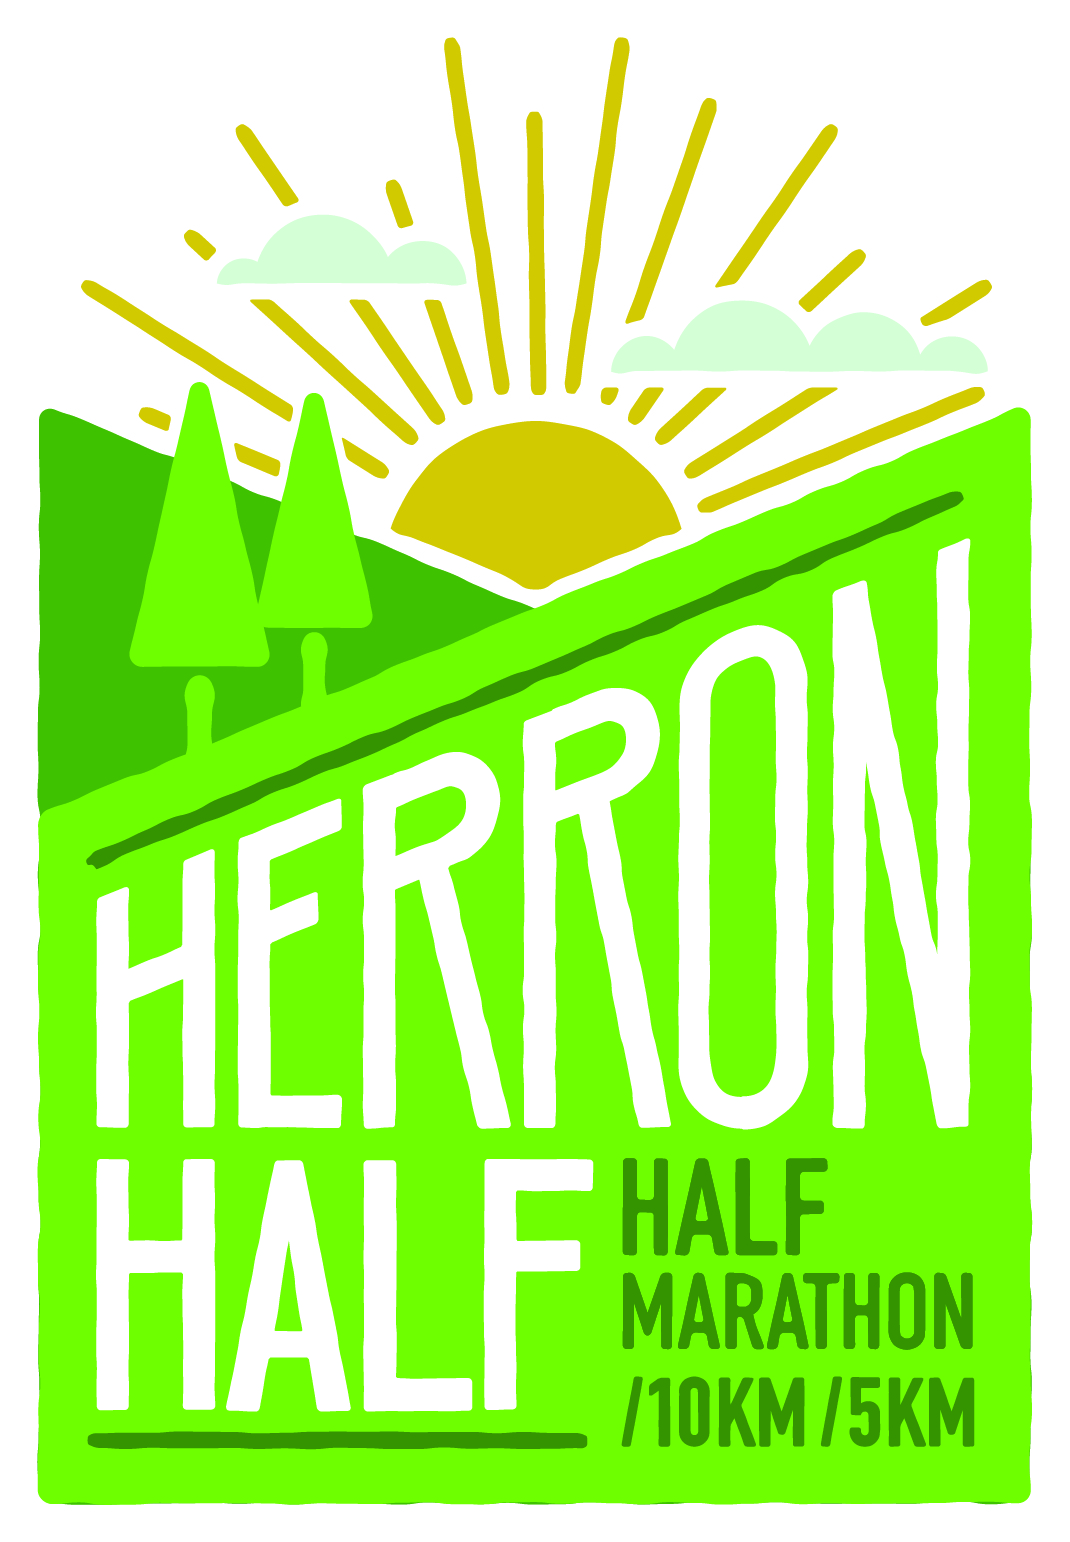 Herron Half Marathon Kalispell, Montana Running